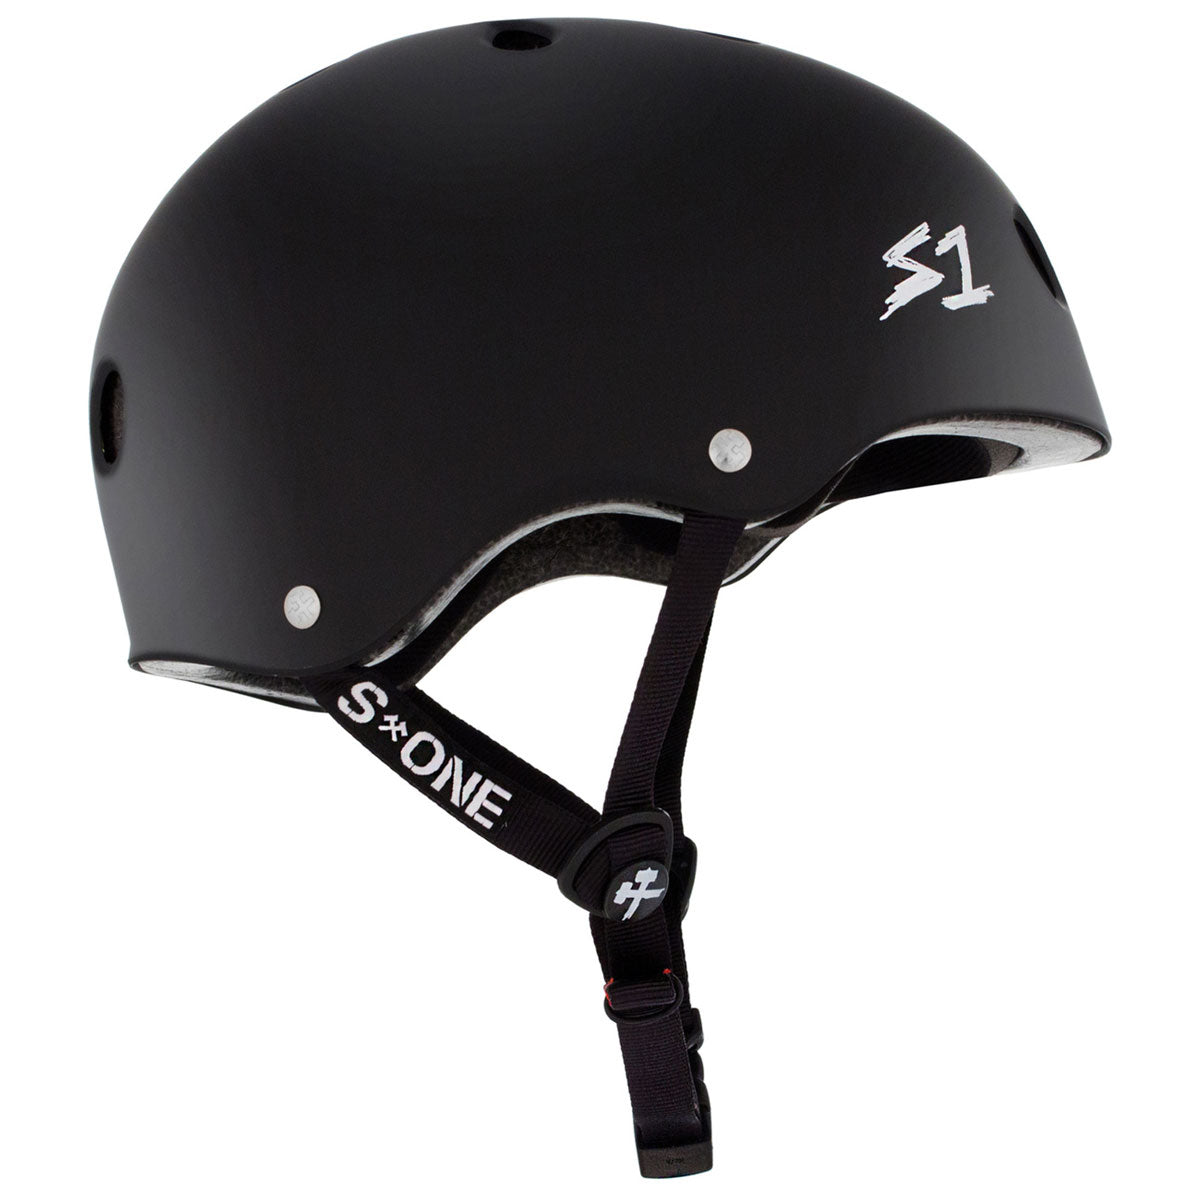 S-One Lifer Helmet - Black Matte image 2